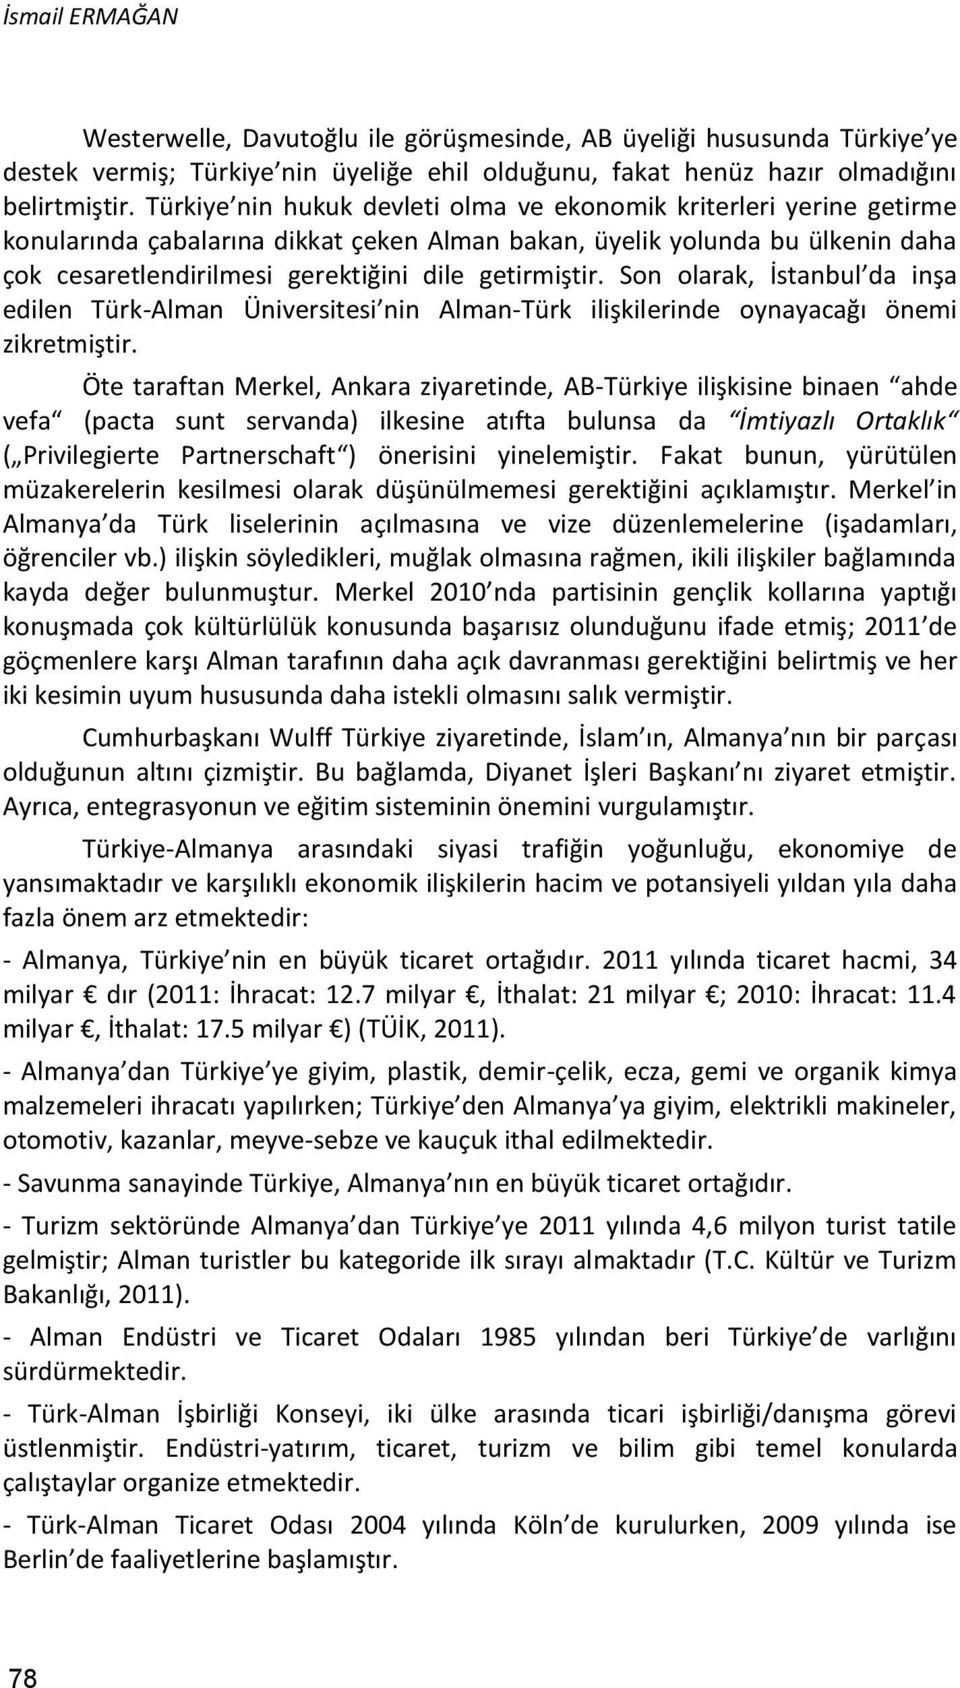 getirmiştir. Son olarak, İstanbul da inşa edilen Türk-Alman Üniversitesi nin Alman-Türk ilişkilerinde oynayacağı önemi zikretmiştir.